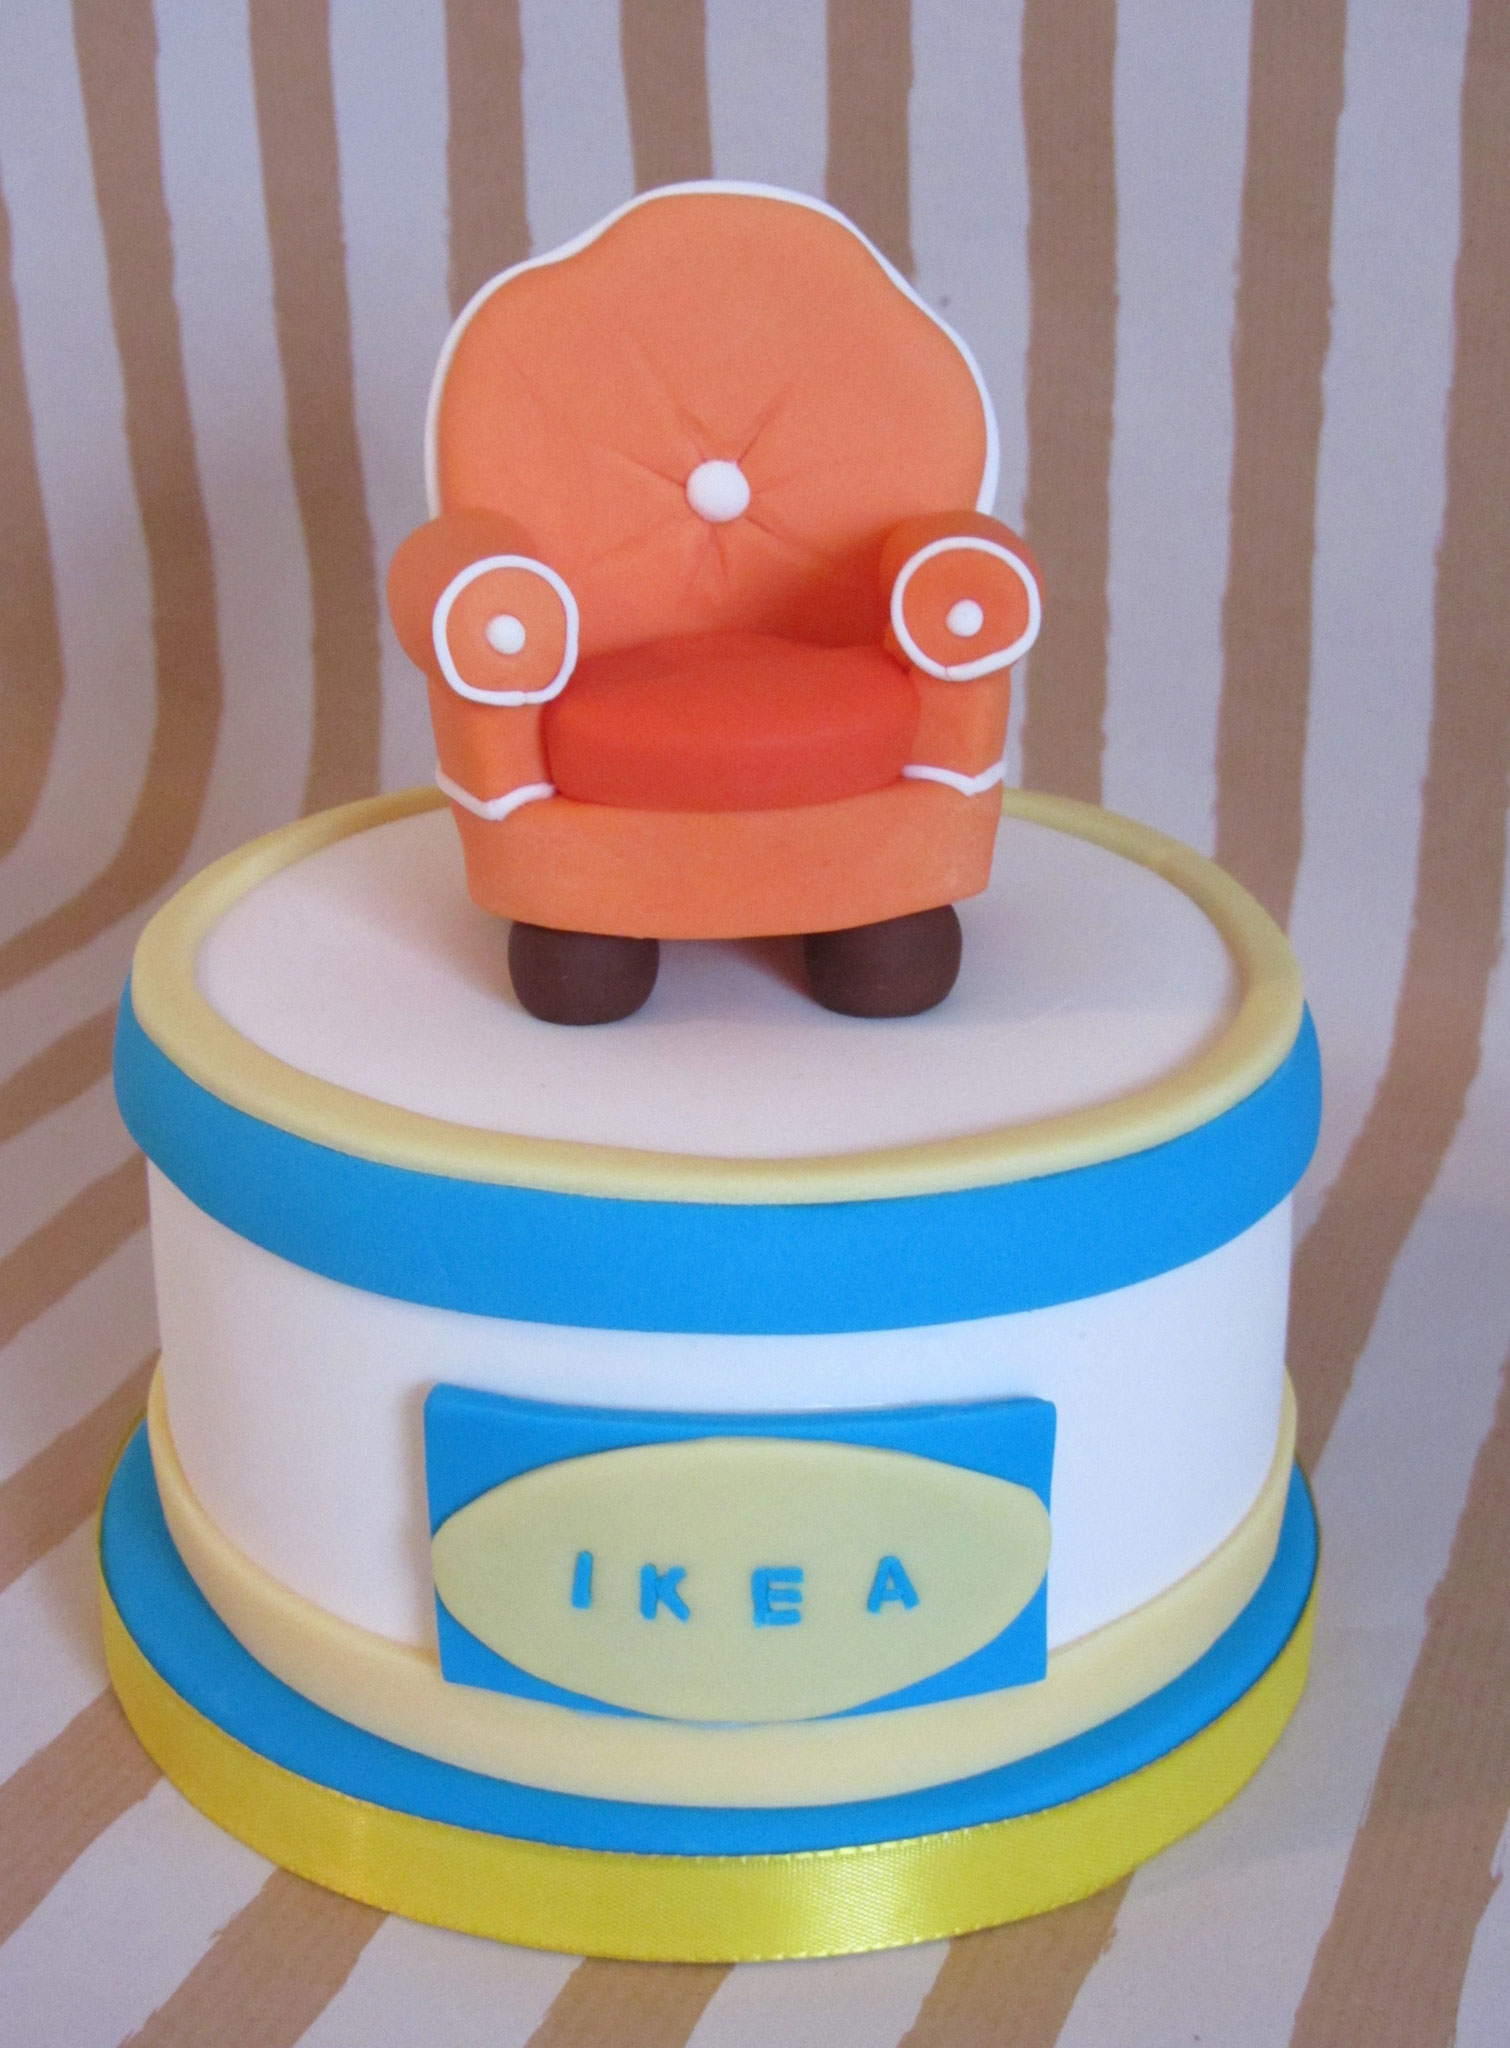 Ikea-Fan-Torte